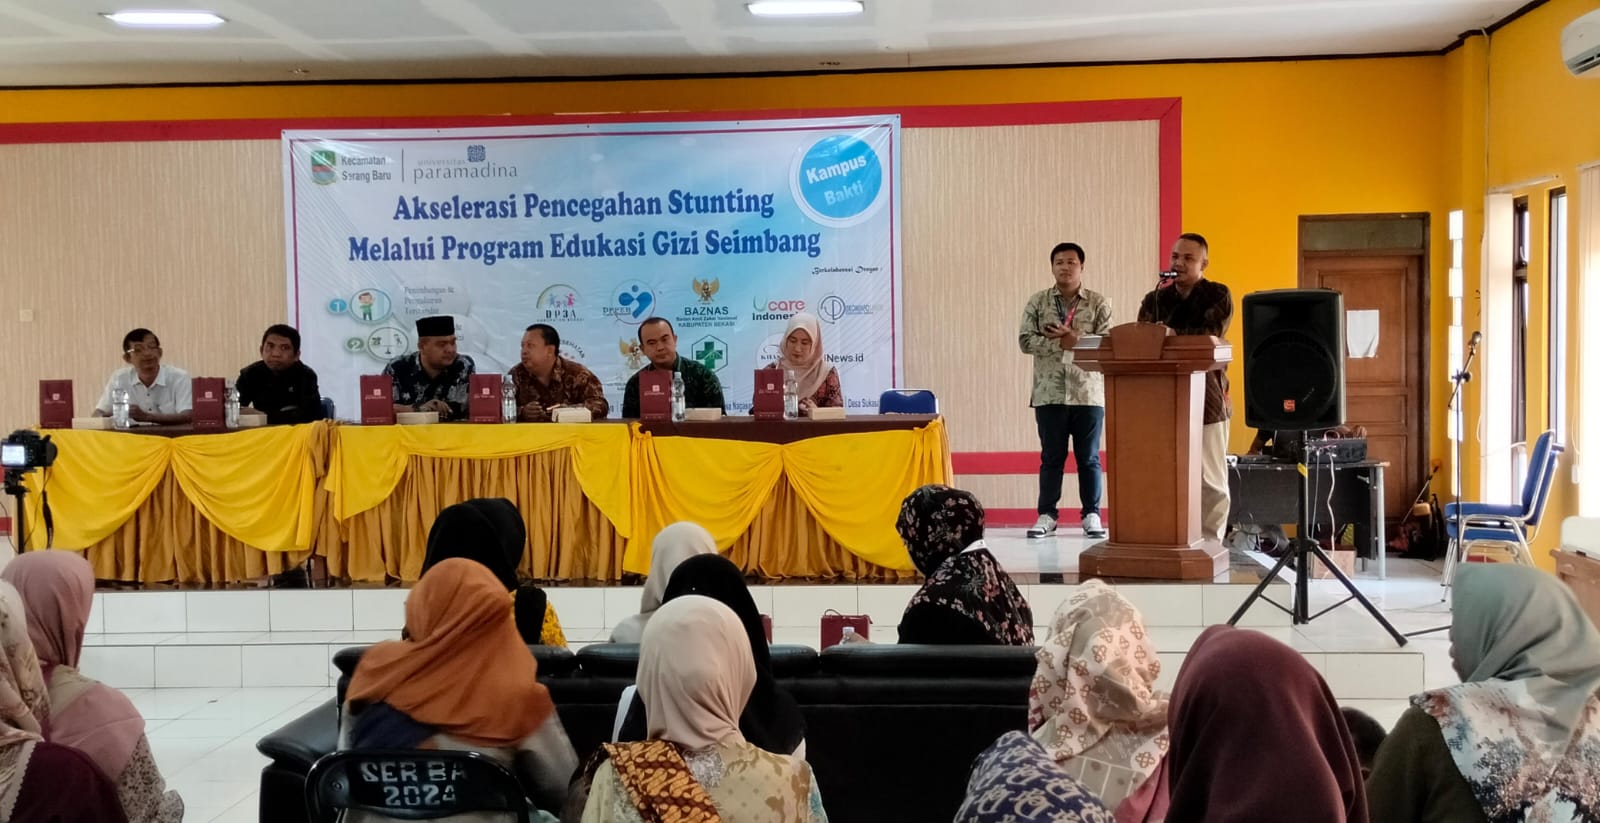 Percepat Penurunan Stunting di Kabupaten Bekasi, Pemkec Serang Baru Sosialisasi Program Edukasi Gizi Seimbang